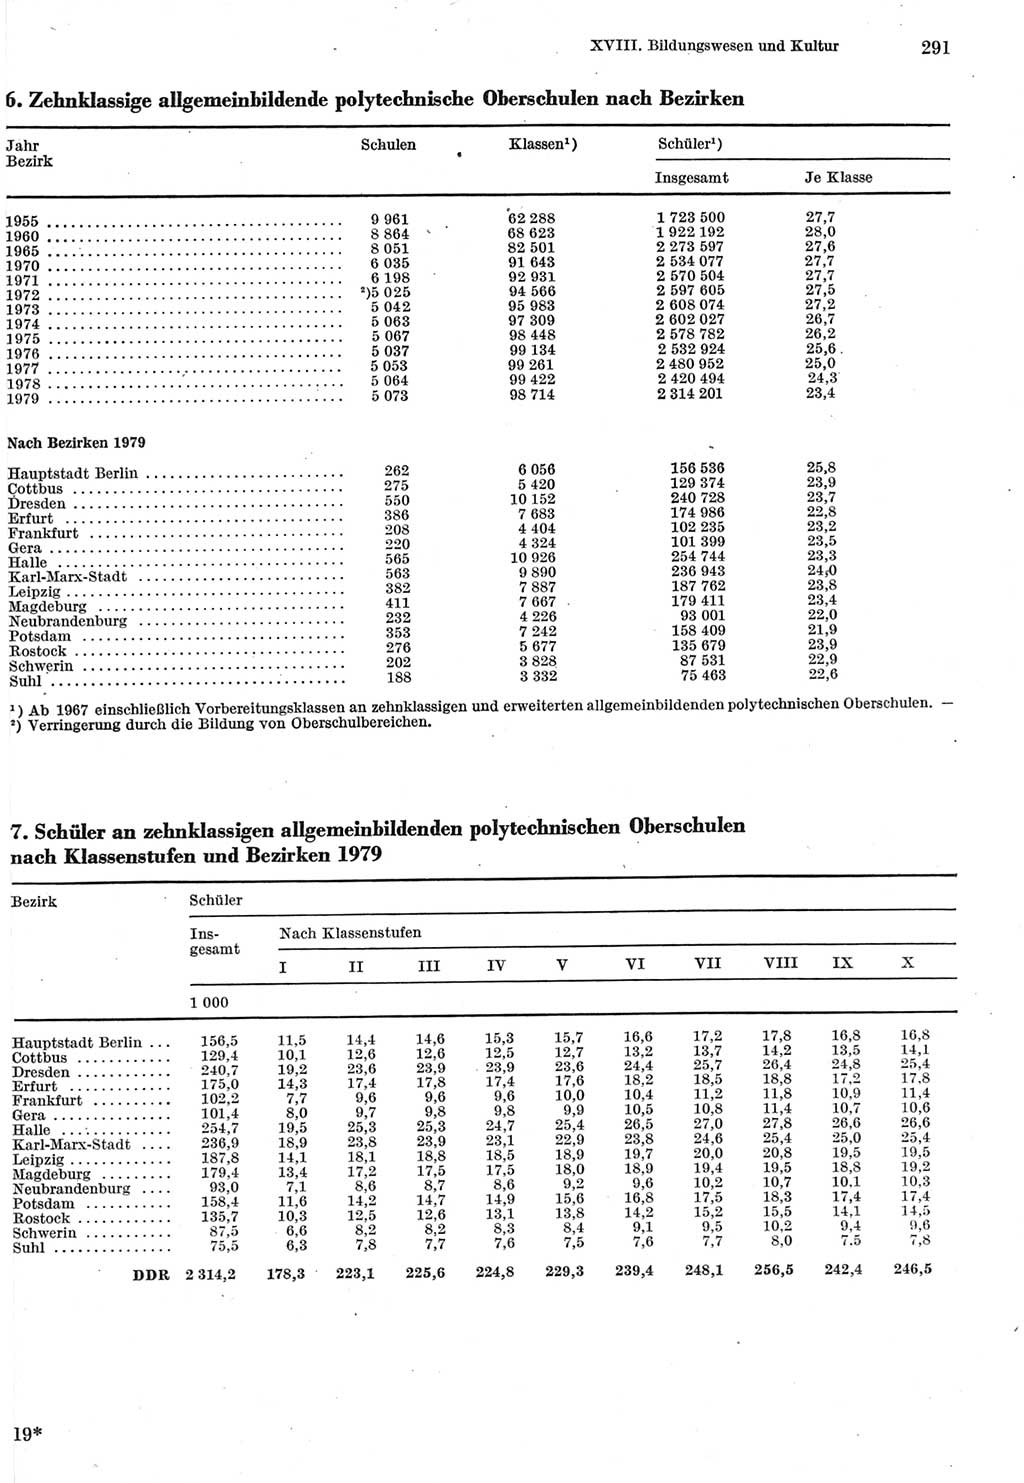 Statistisches Jahrbuch der Deutschen Demokratischen Republik (DDR) 1980, Seite 291 (Stat. Jb. DDR 1980, S. 291)